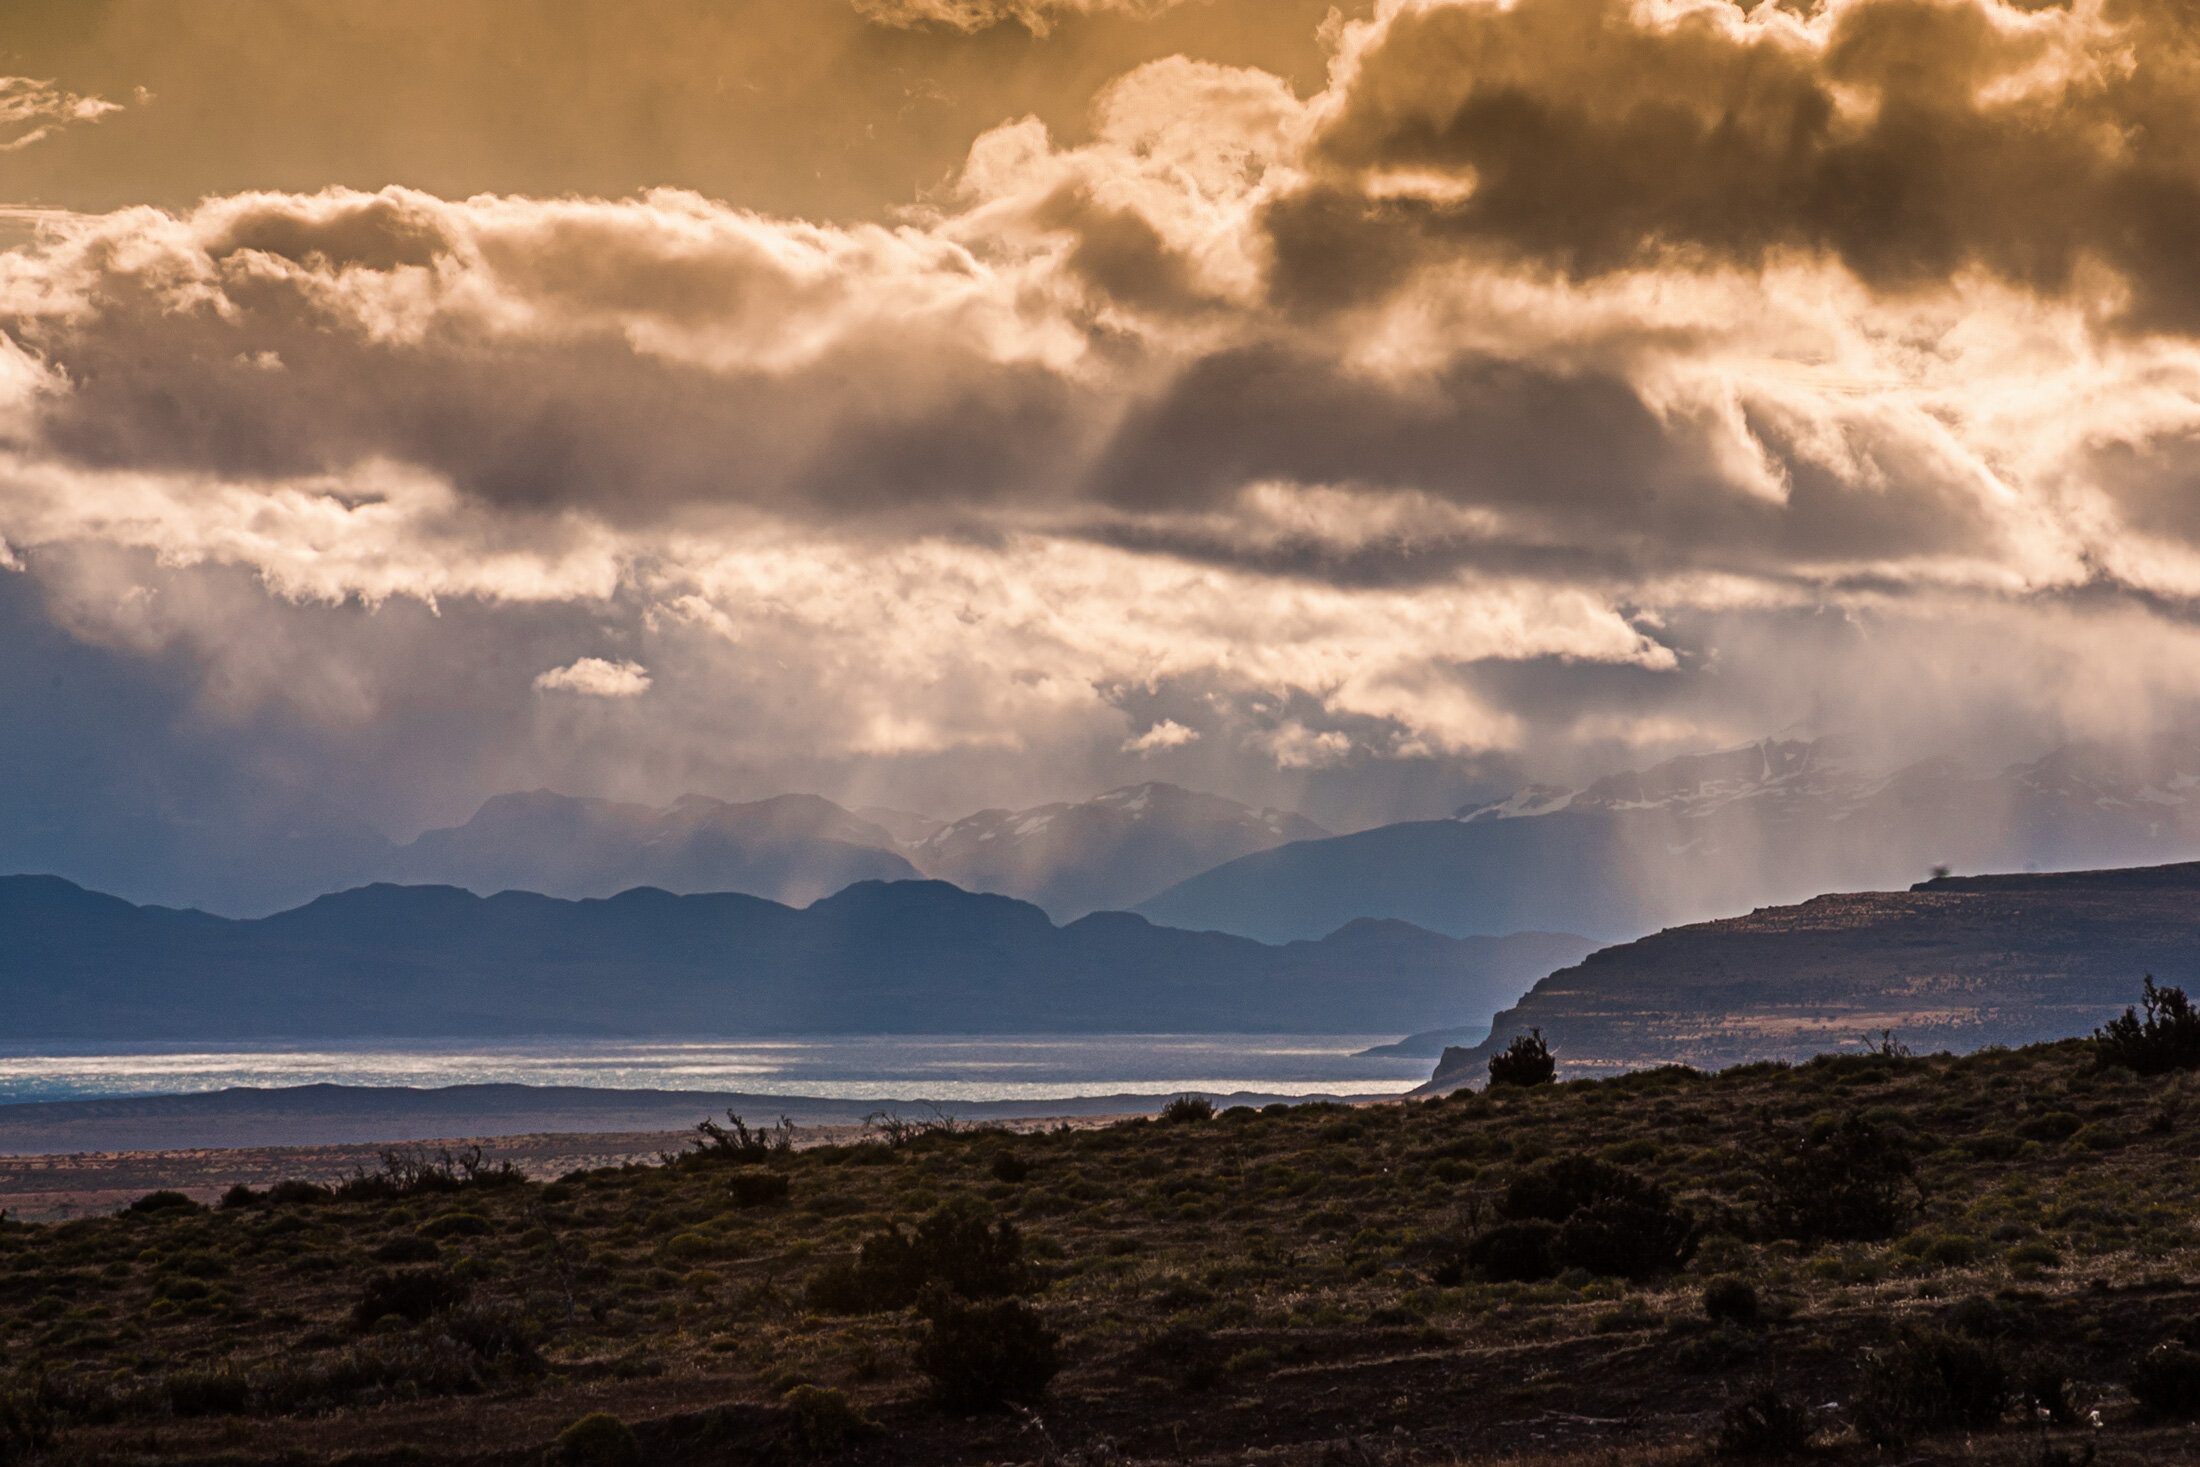 patagonia_landscape_lake.jpg